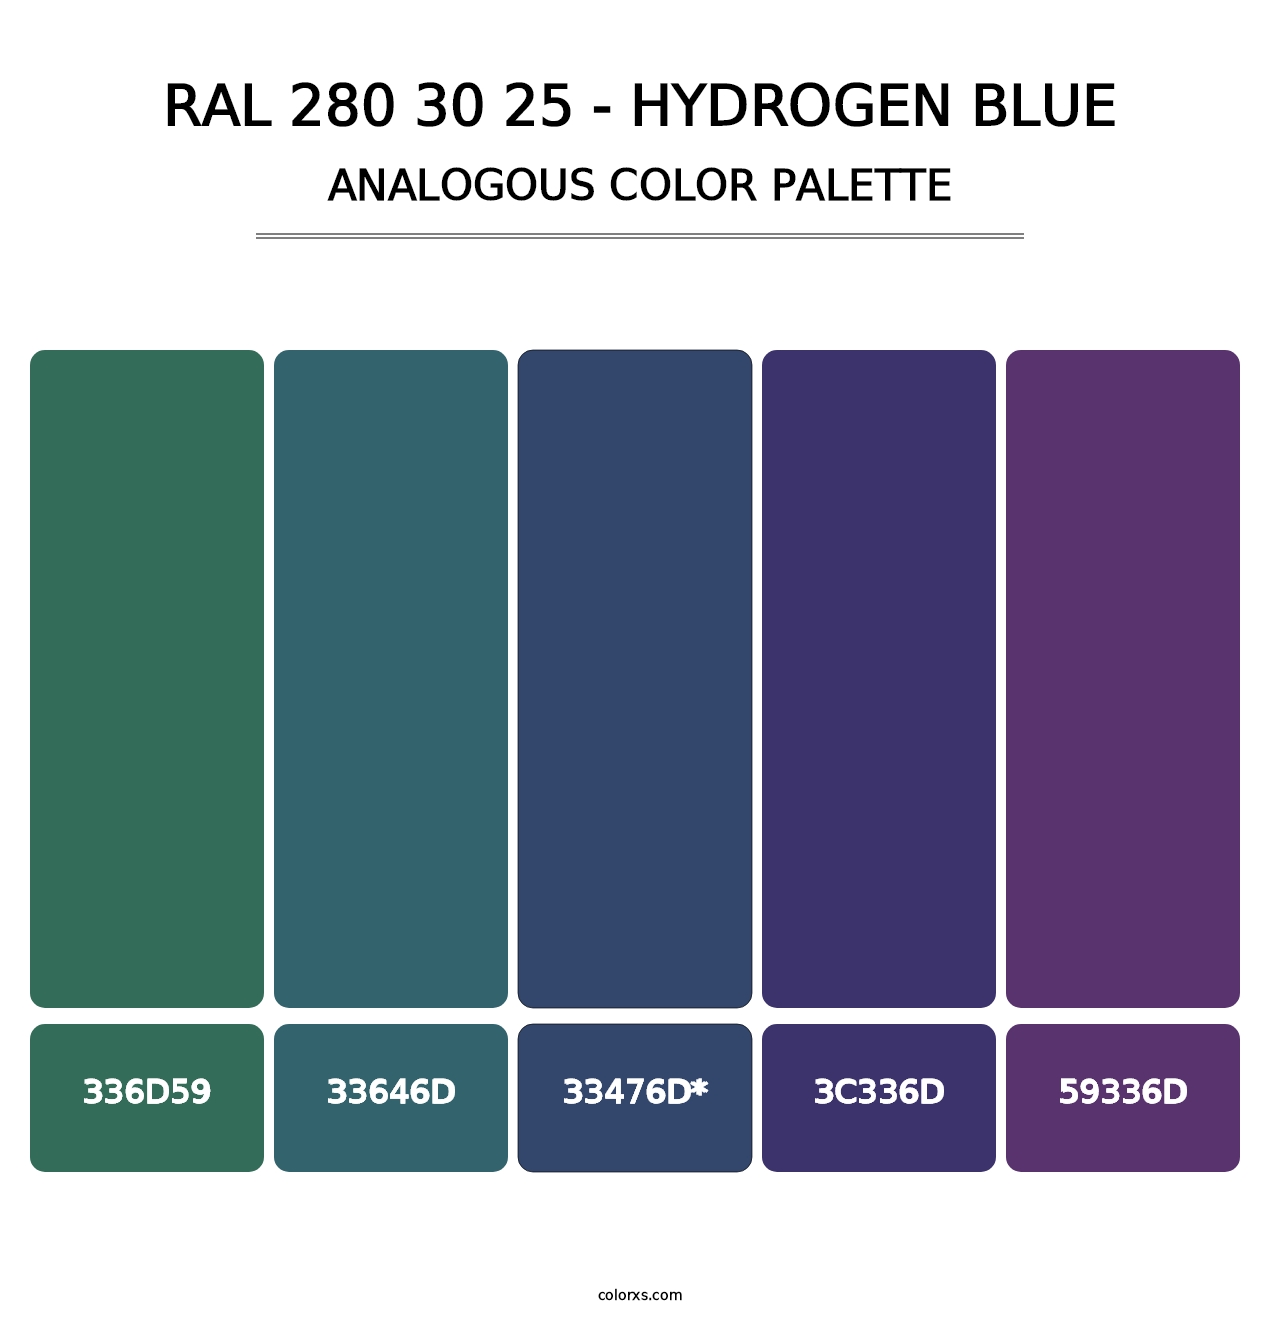 RAL 280 30 25 - Hydrogen Blue - Analogous Color Palette